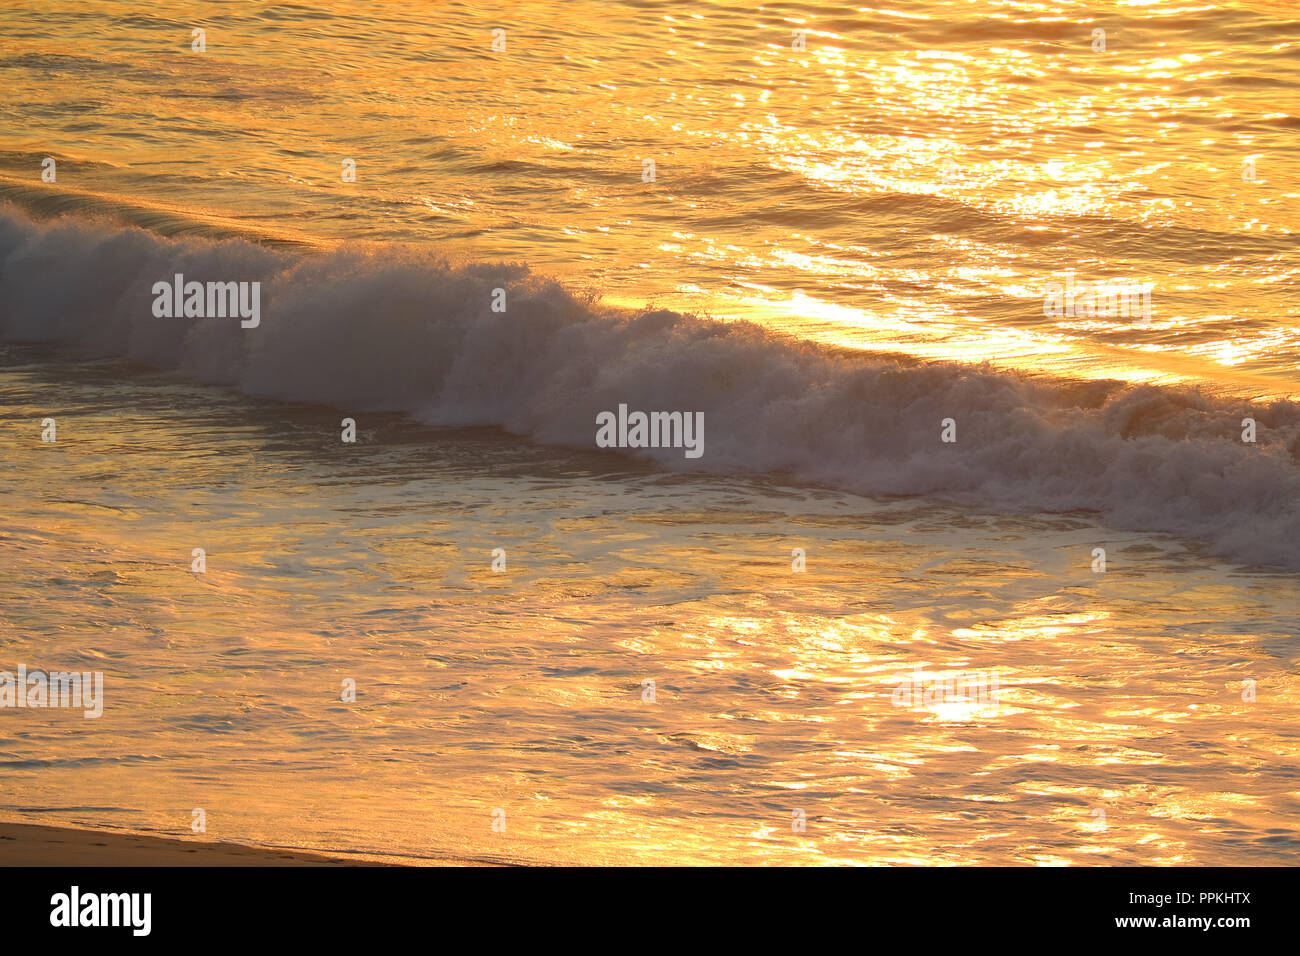 Couleur d'or de grandes vagues de l'océan Atlantique dans la lumière du soleil du matin, réflexions de Rio de Janeiro Brésil Banque D'Images